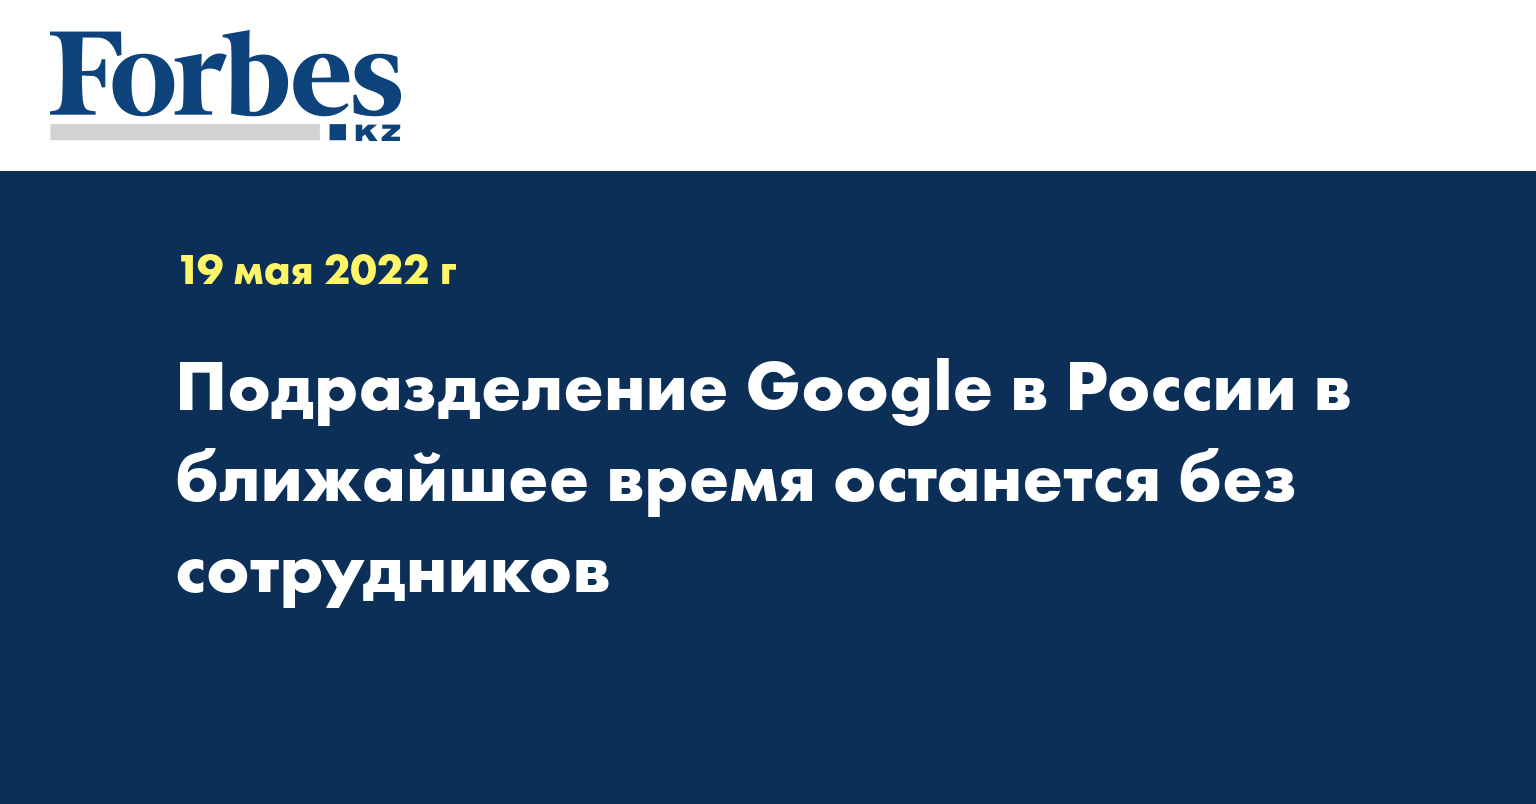 Подразделение Google в России в ближайшее время останется без сотрудников